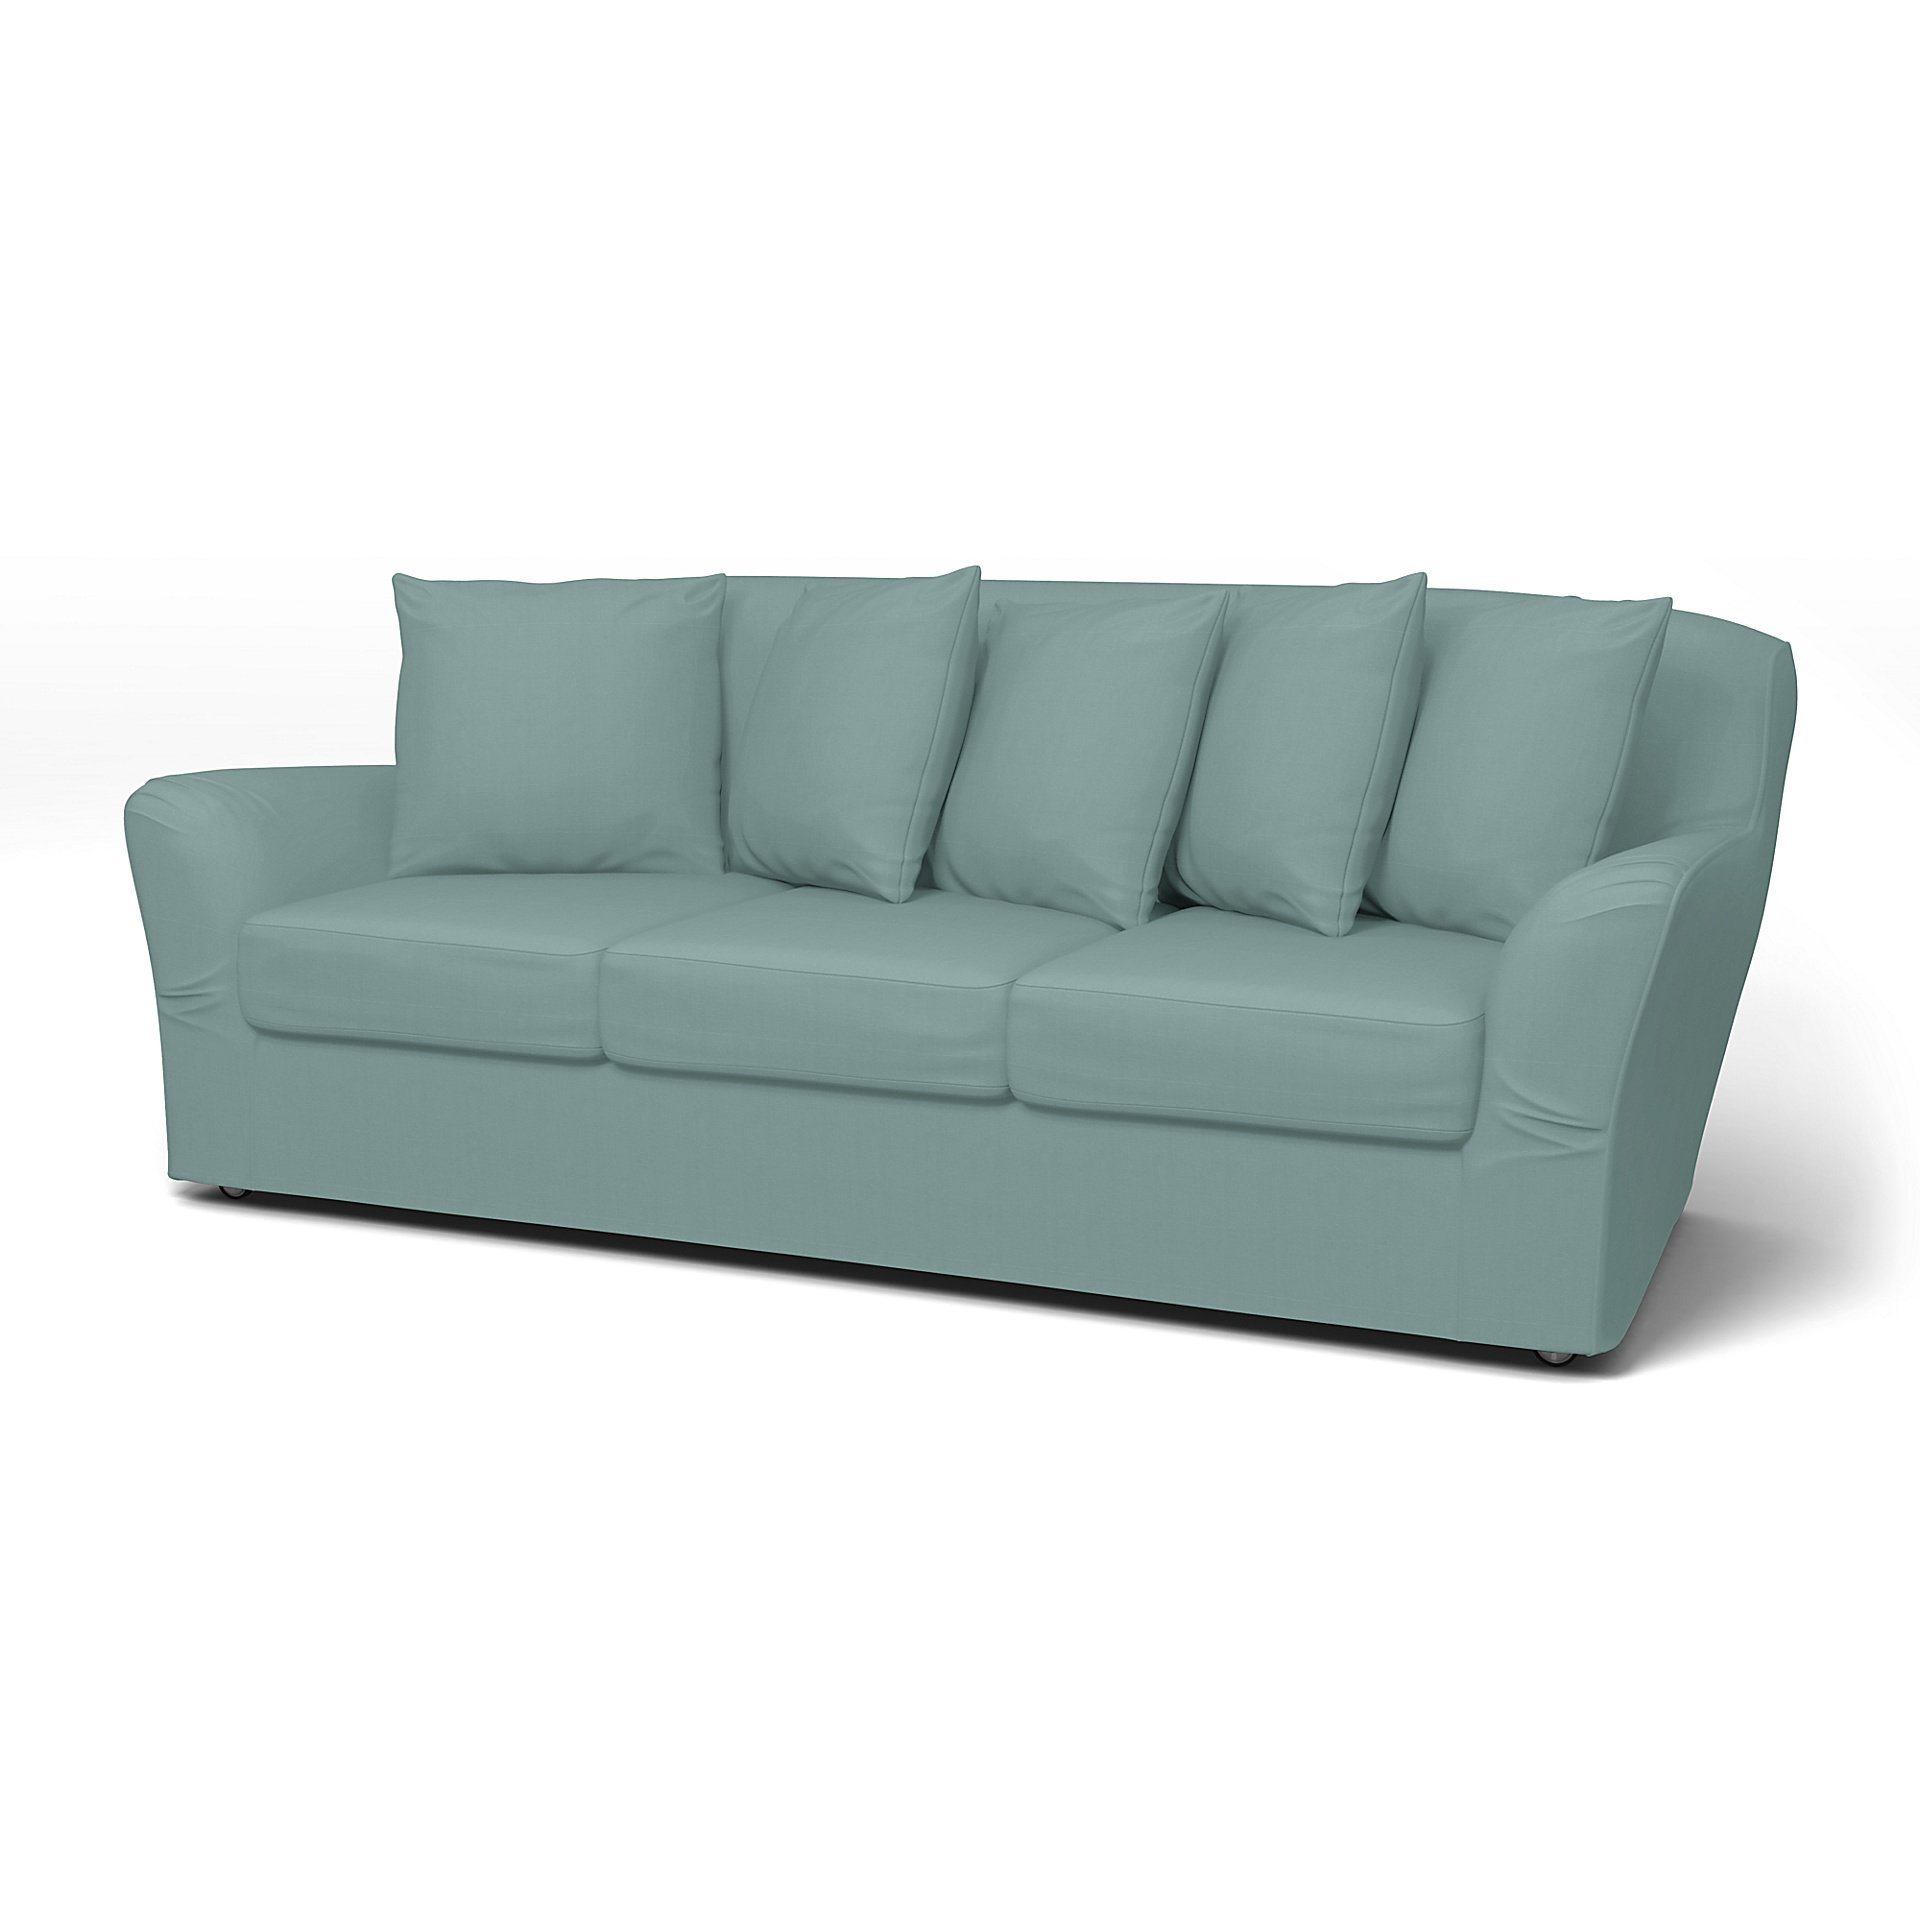 IKEA - Tomelilla 3 seater sofa, Mineral Blue, Cotton - Bemz